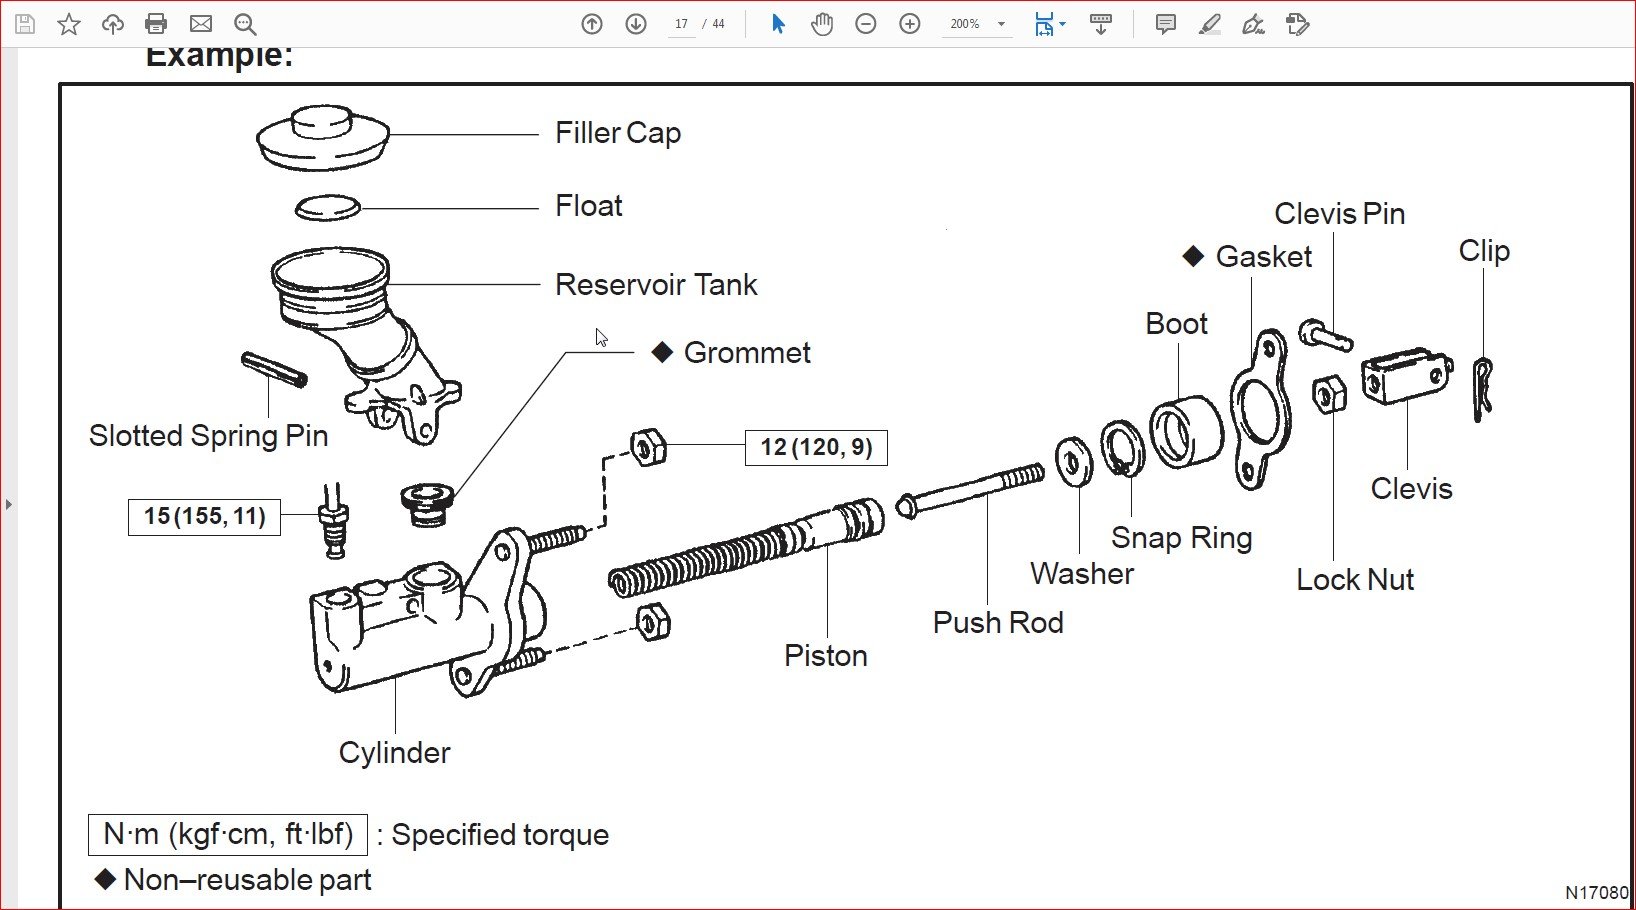 2000 toyota camry repair manual pdf download creative cloud pc download